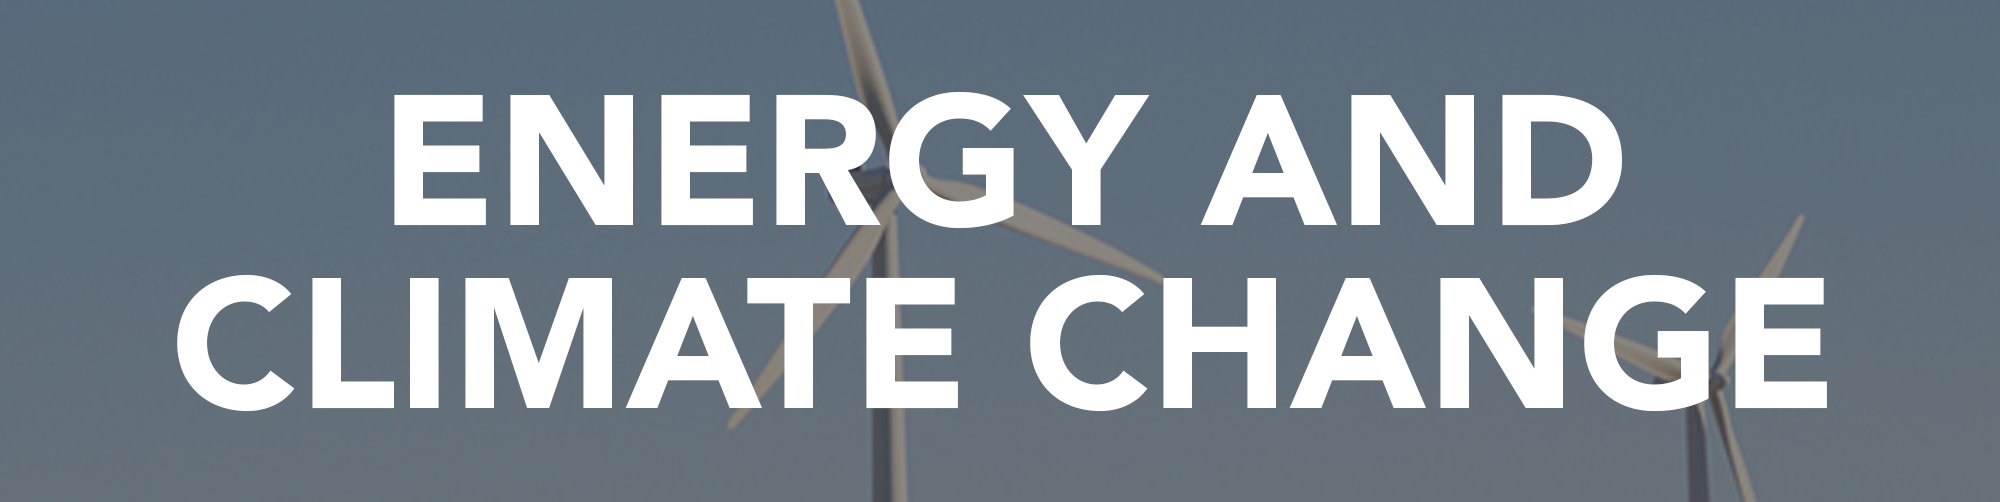 Информация и статьи об энергетике и изменении климата